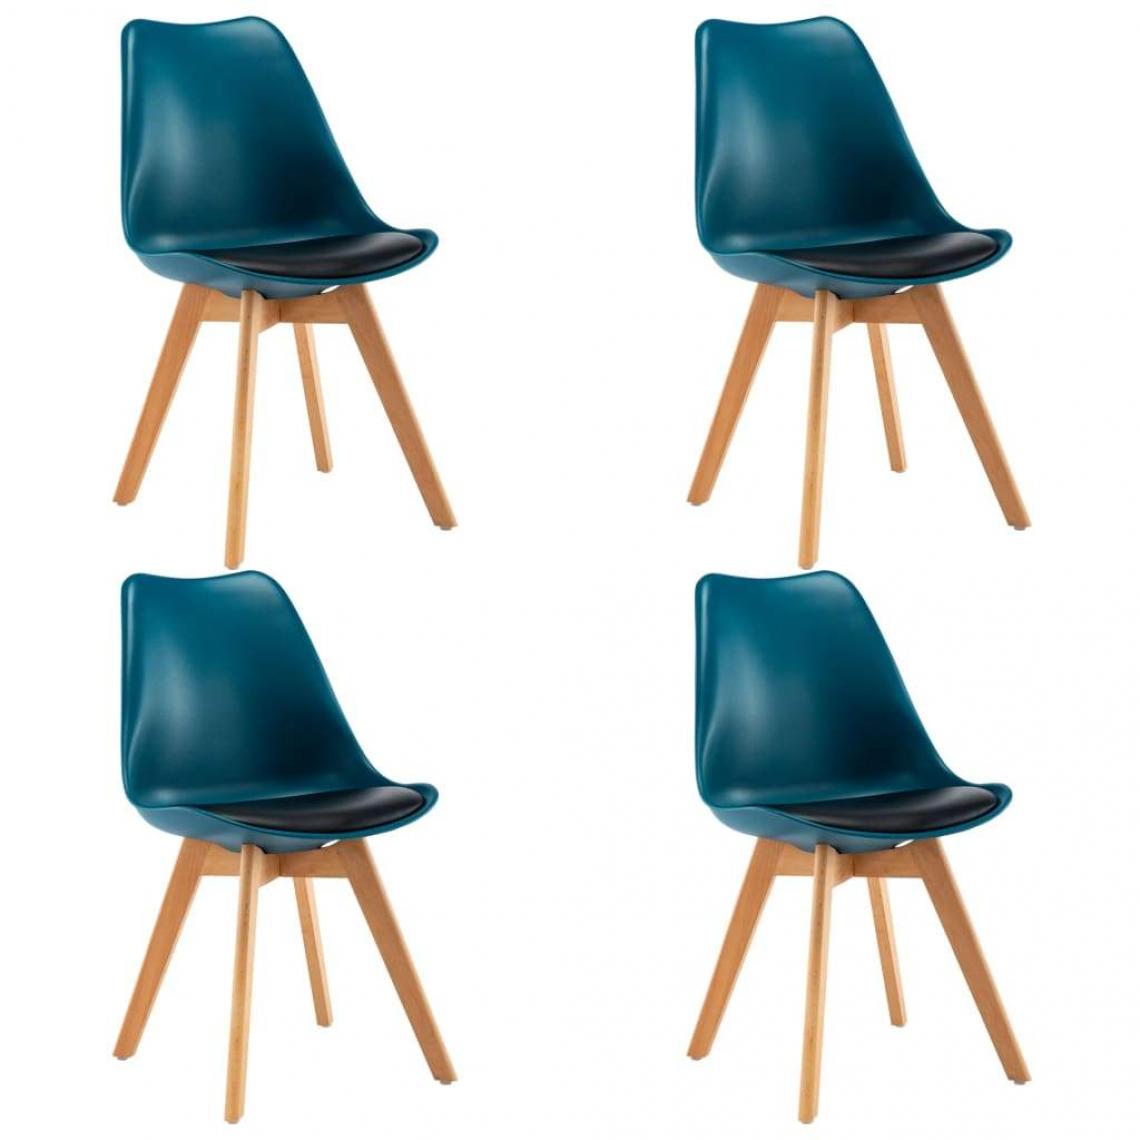 Decoshop26 - Lot de 4 chaises de salle à manger cuisine design rétro similicuir turquoise et noir CDS022009 - Chaises